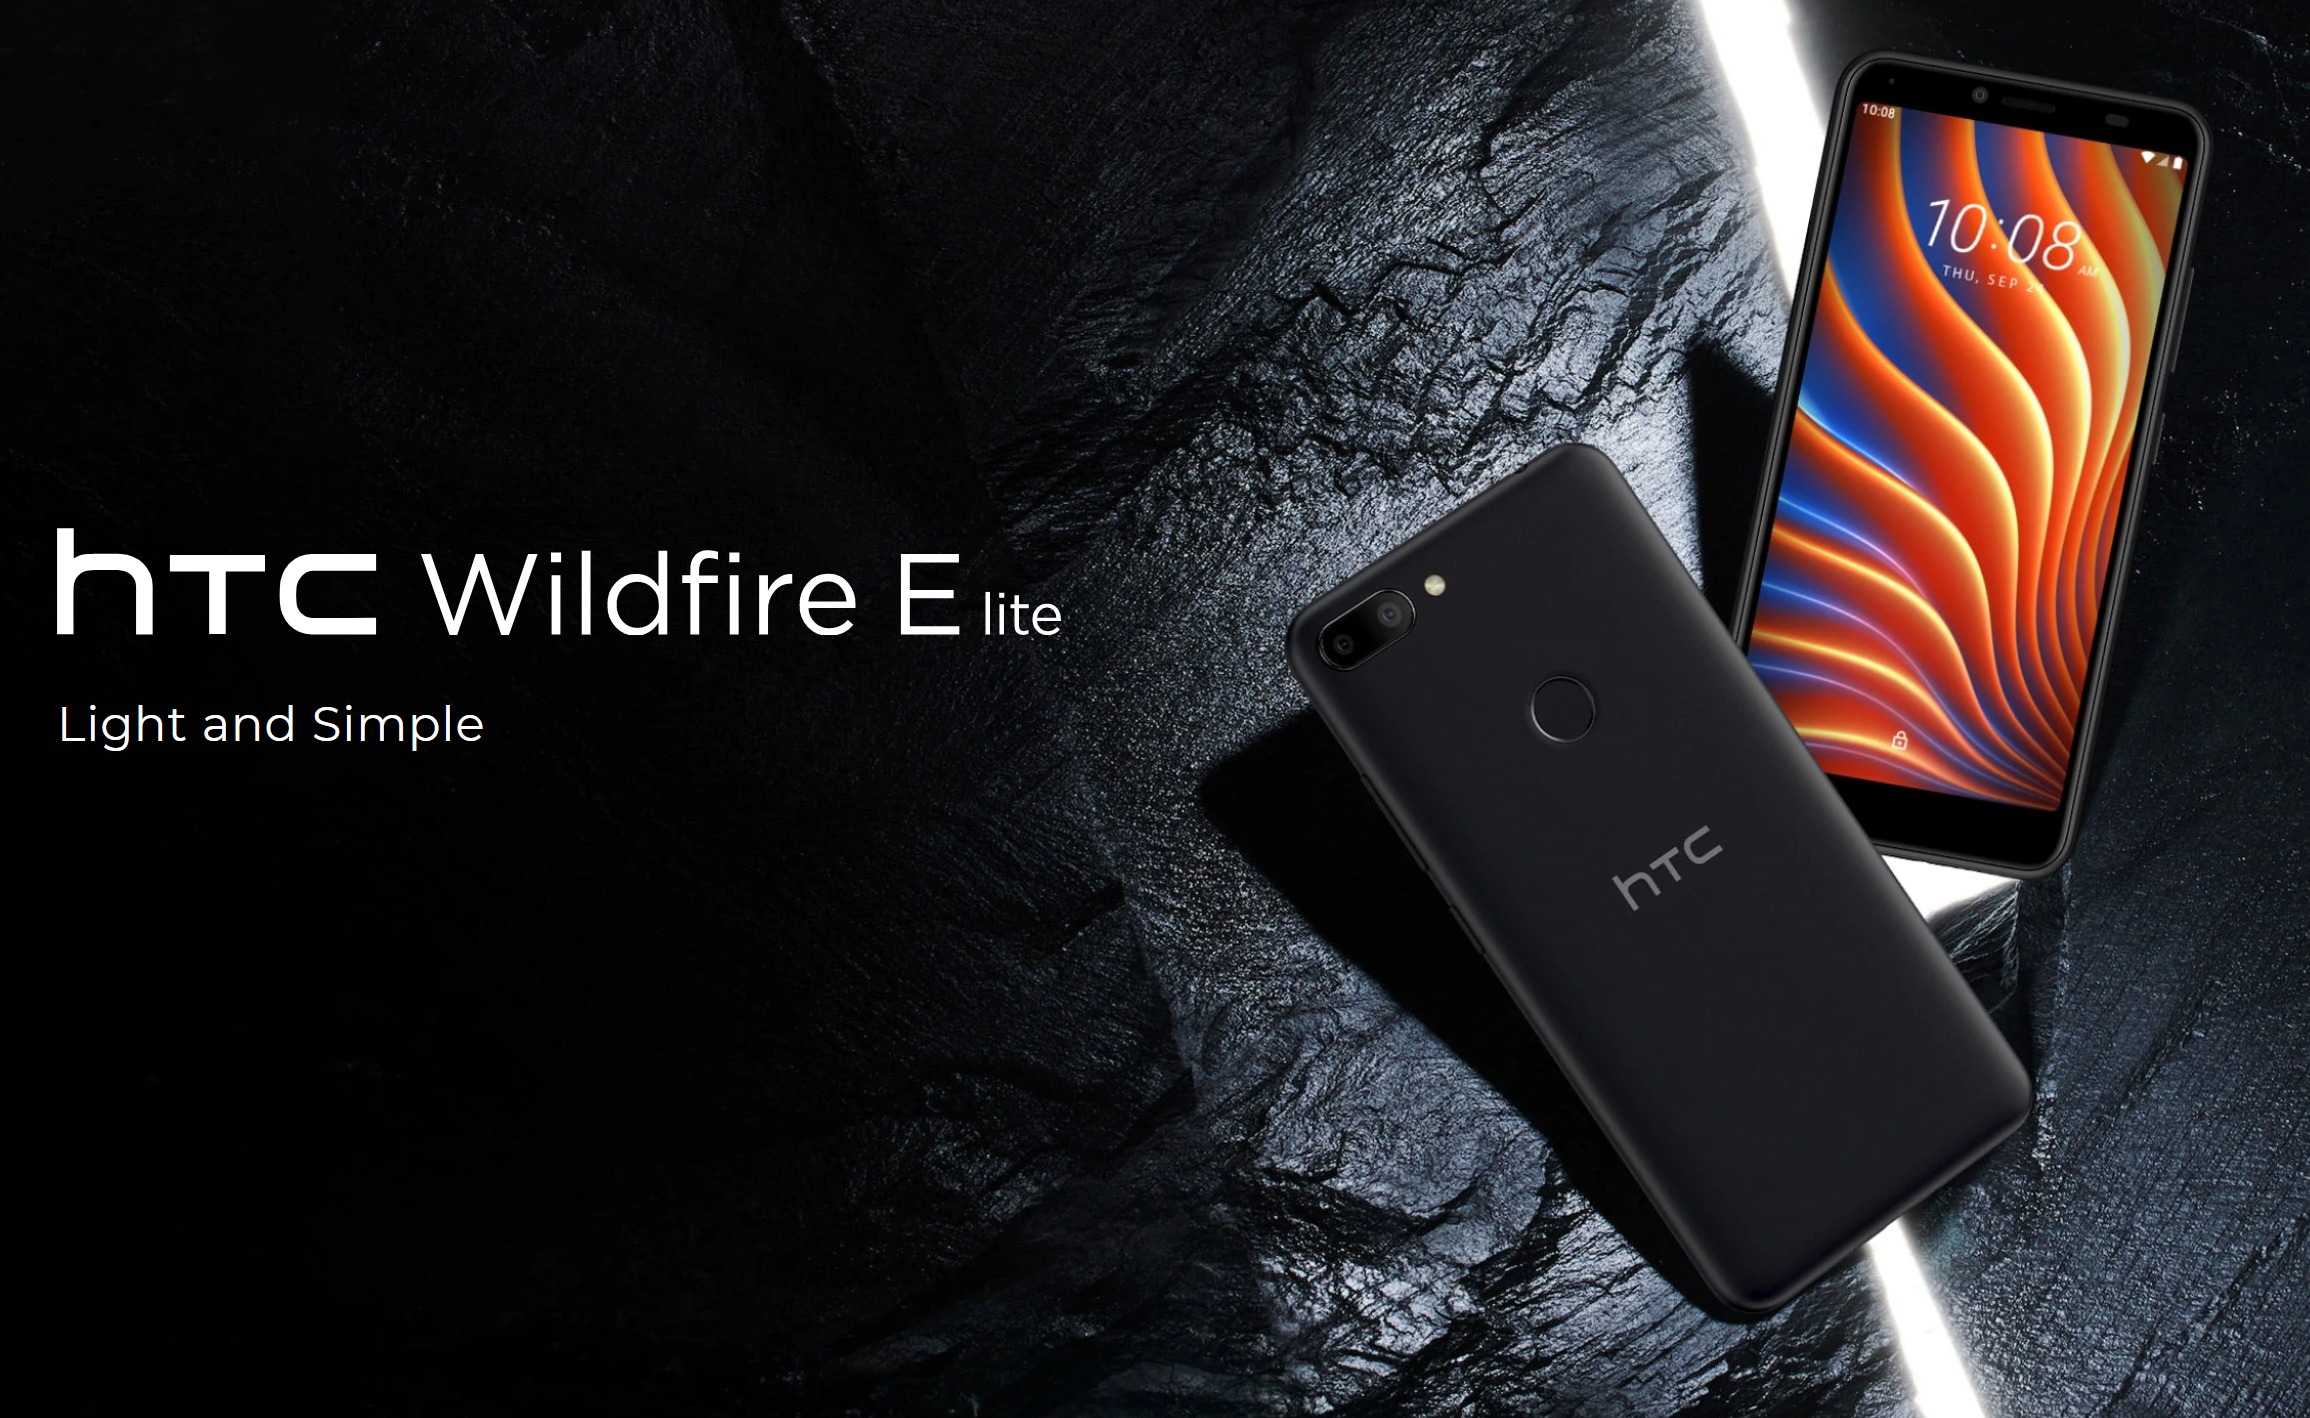 HTC Wildfire E Lite